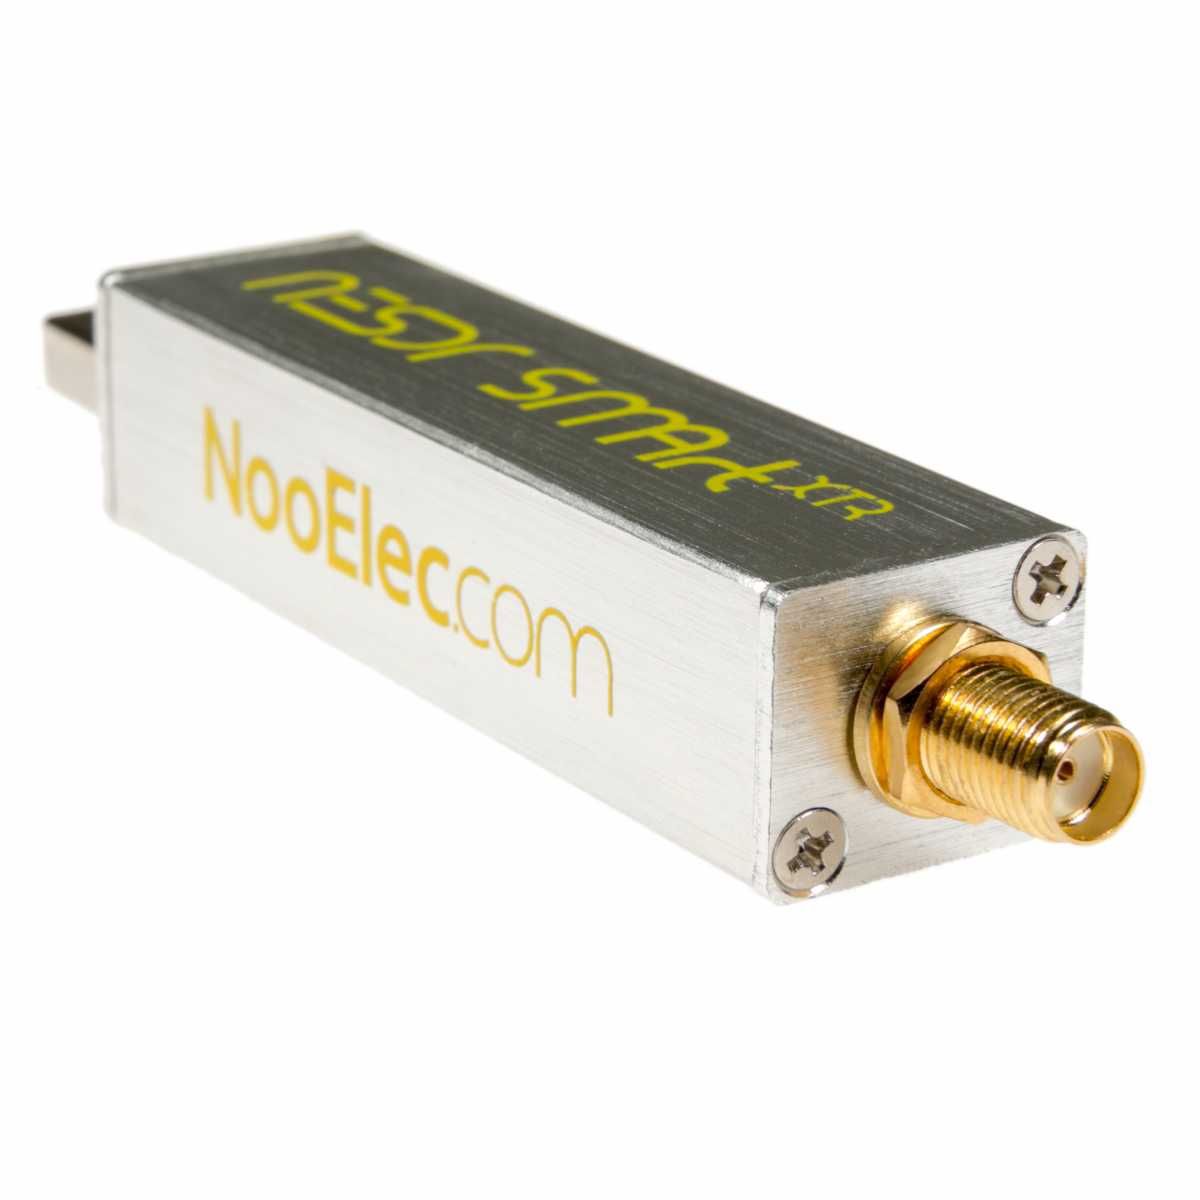 Приемник RTL-SDR NESDR SMArt XTR SDR 65 МГц–2,3 ГГц пр-во Nooelec США